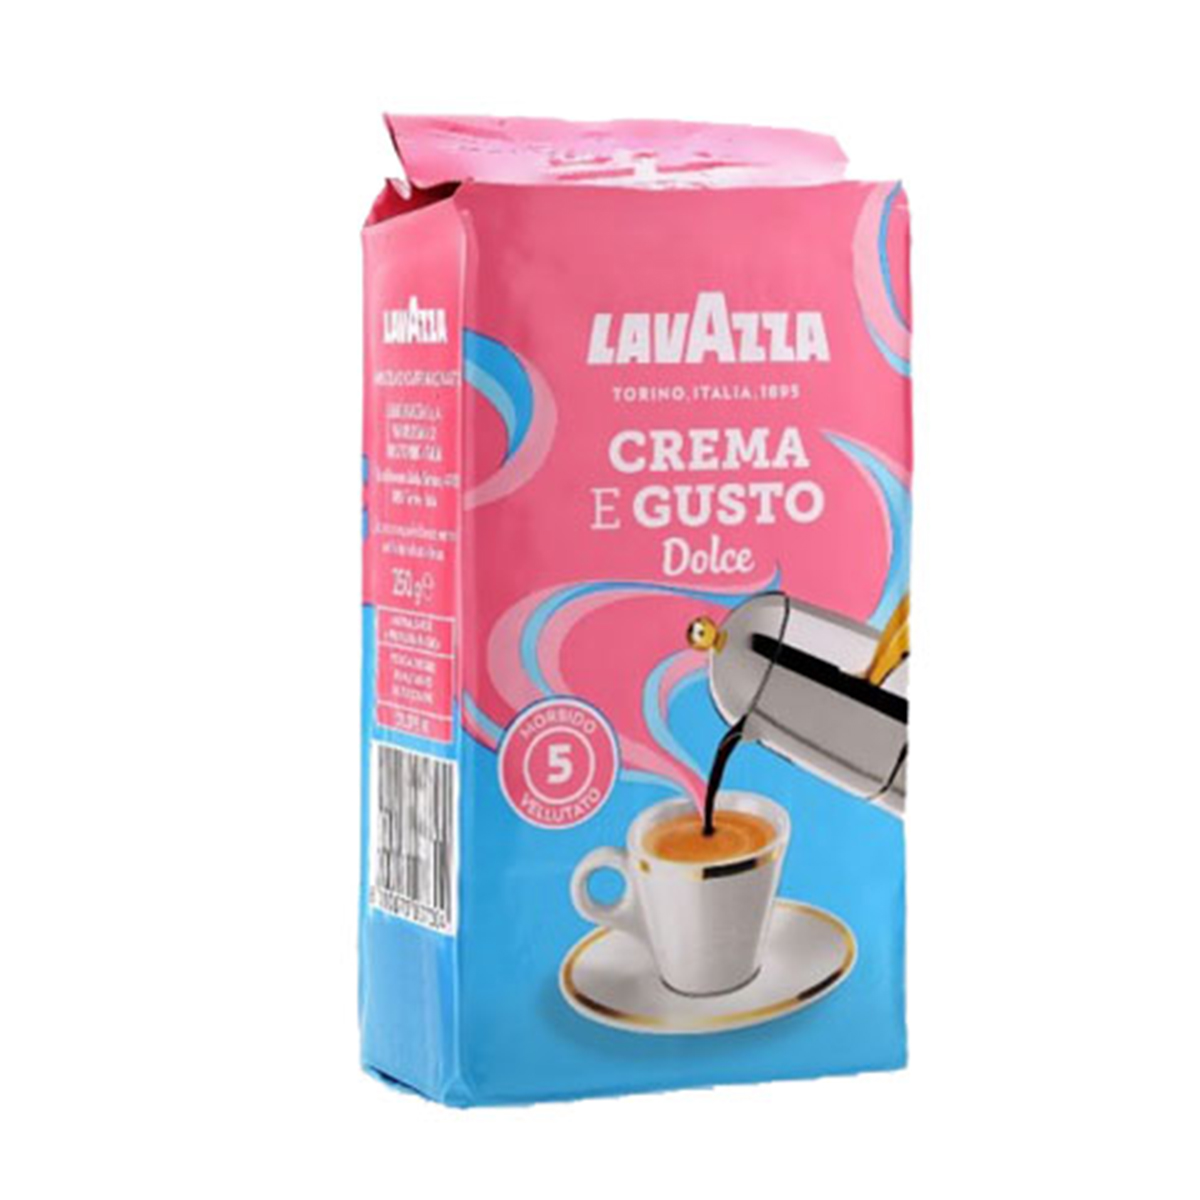 پودر قهوه کلاسیک cream gusto dolce لاواتزا - 250 گرم